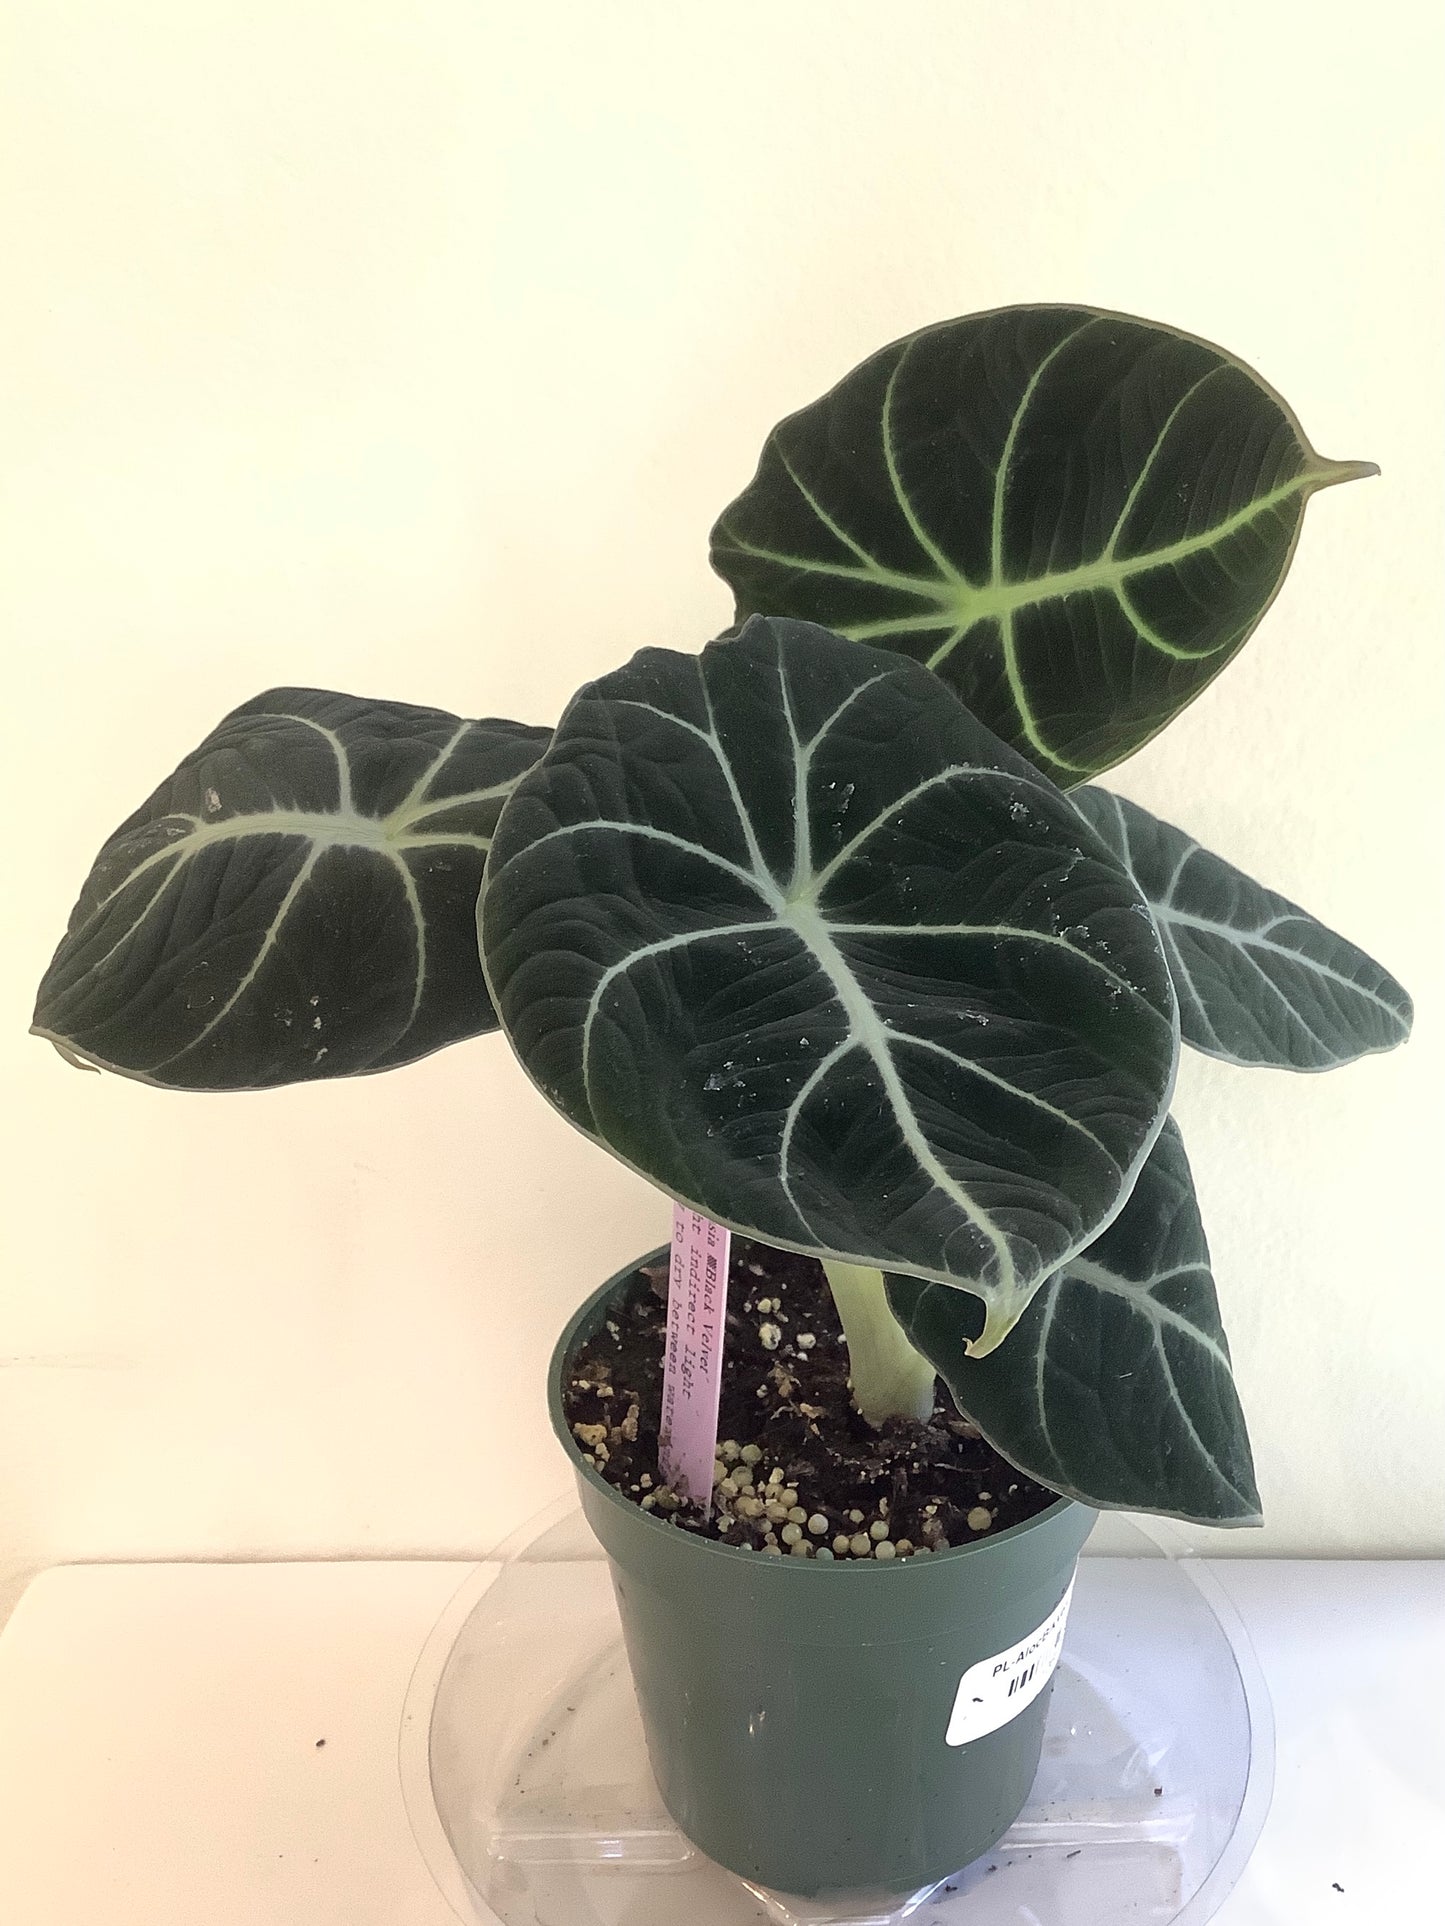 Alocasia Reginula "Black Velvet" Plant - 4" Container